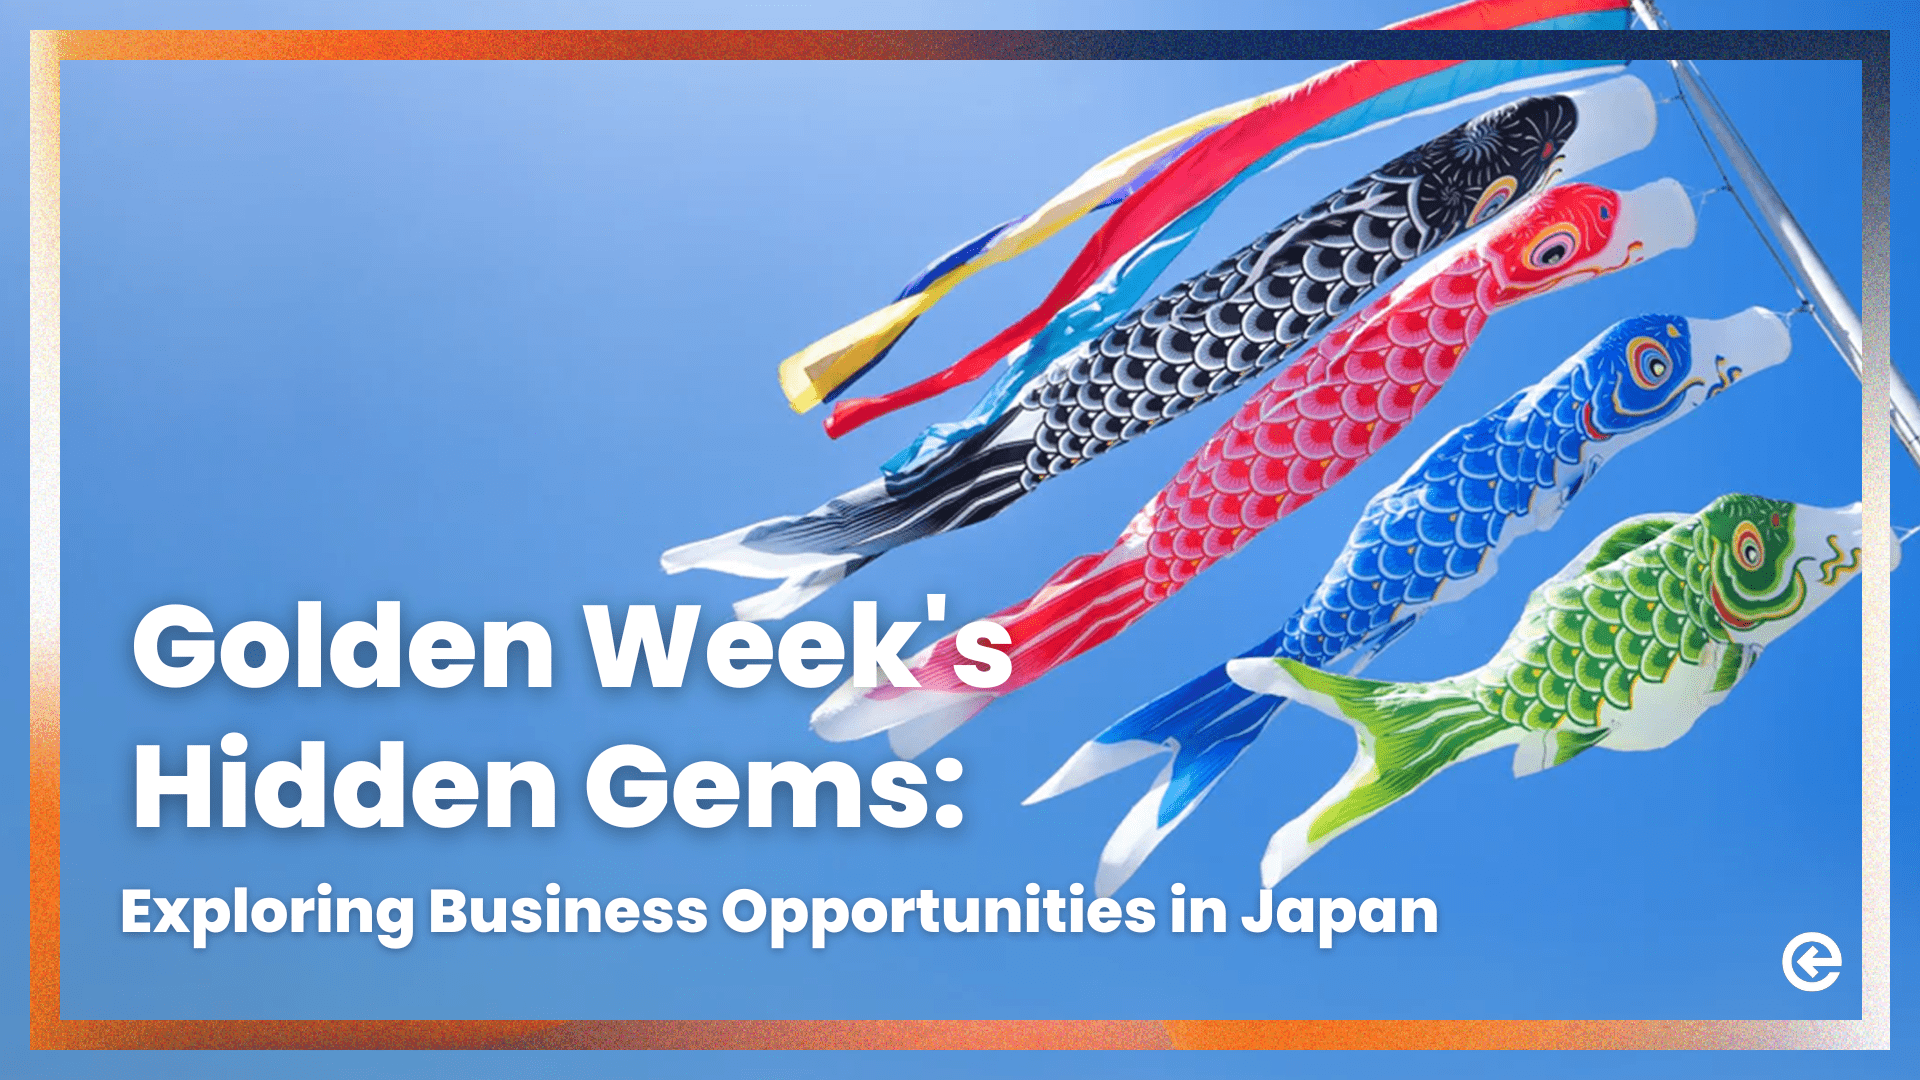 Die versteckten Juwelen der Goldenen Woche: Erkundung von Geschäftsmöglichkeiten in Japan 